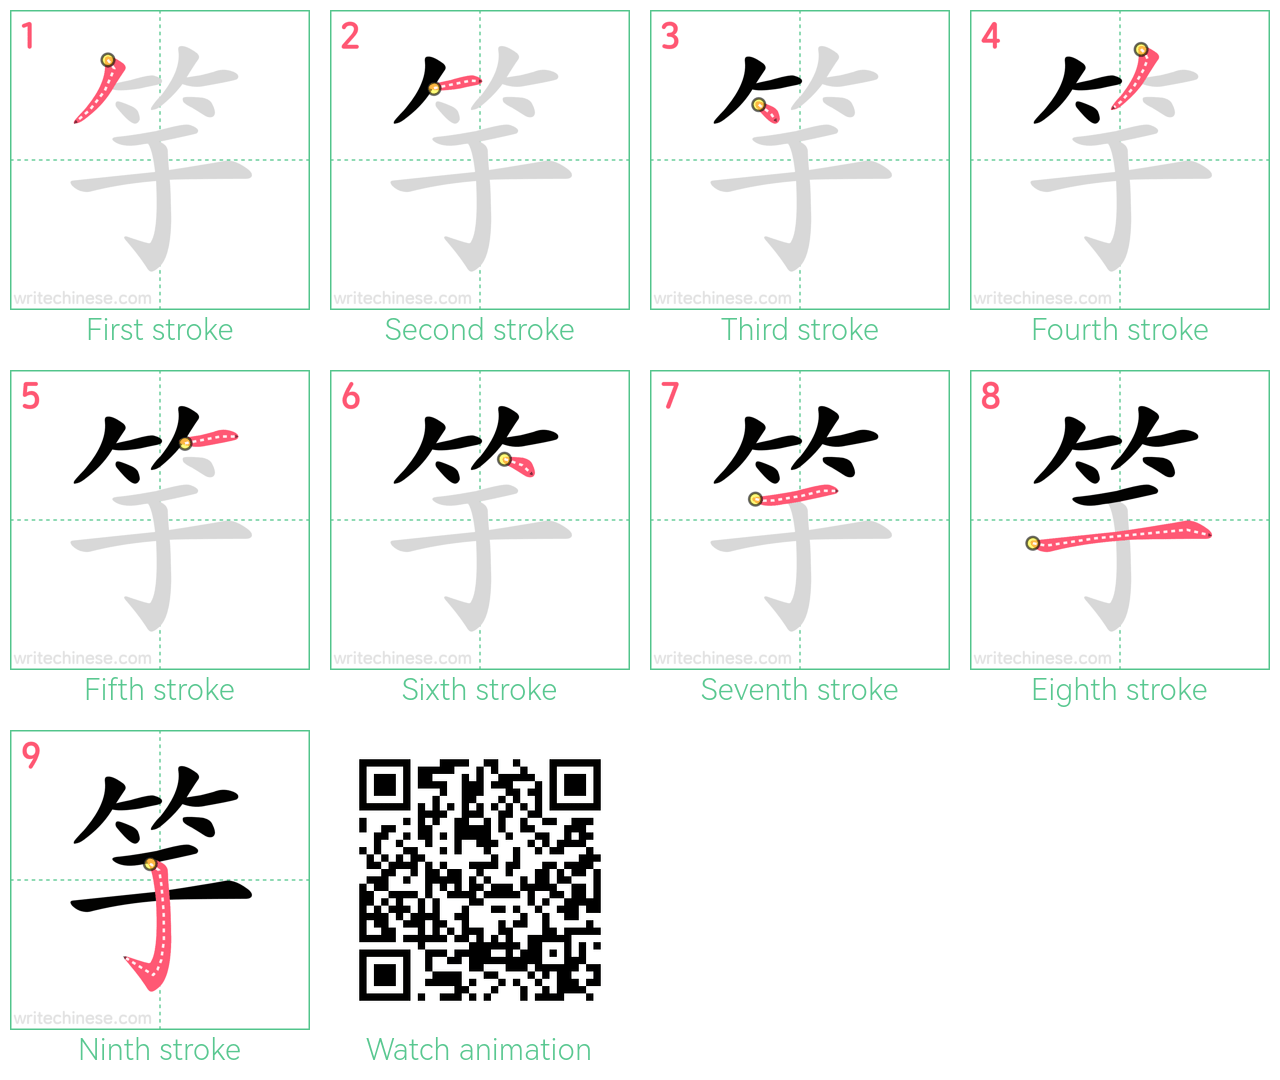 竽 step-by-step stroke order diagrams